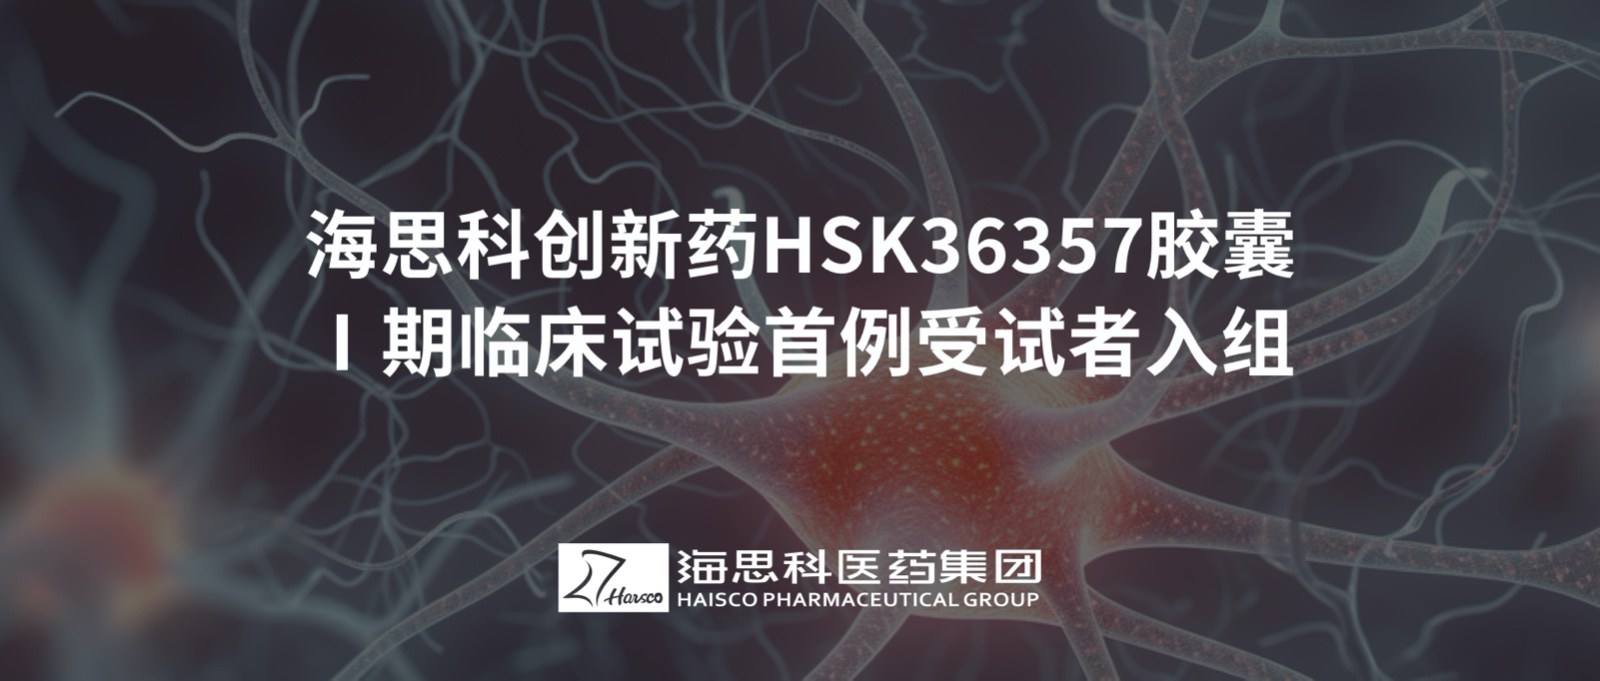 金沙娱场城61665创新药HSK36357胶囊Ⅰ期临床试验首例受试者入组